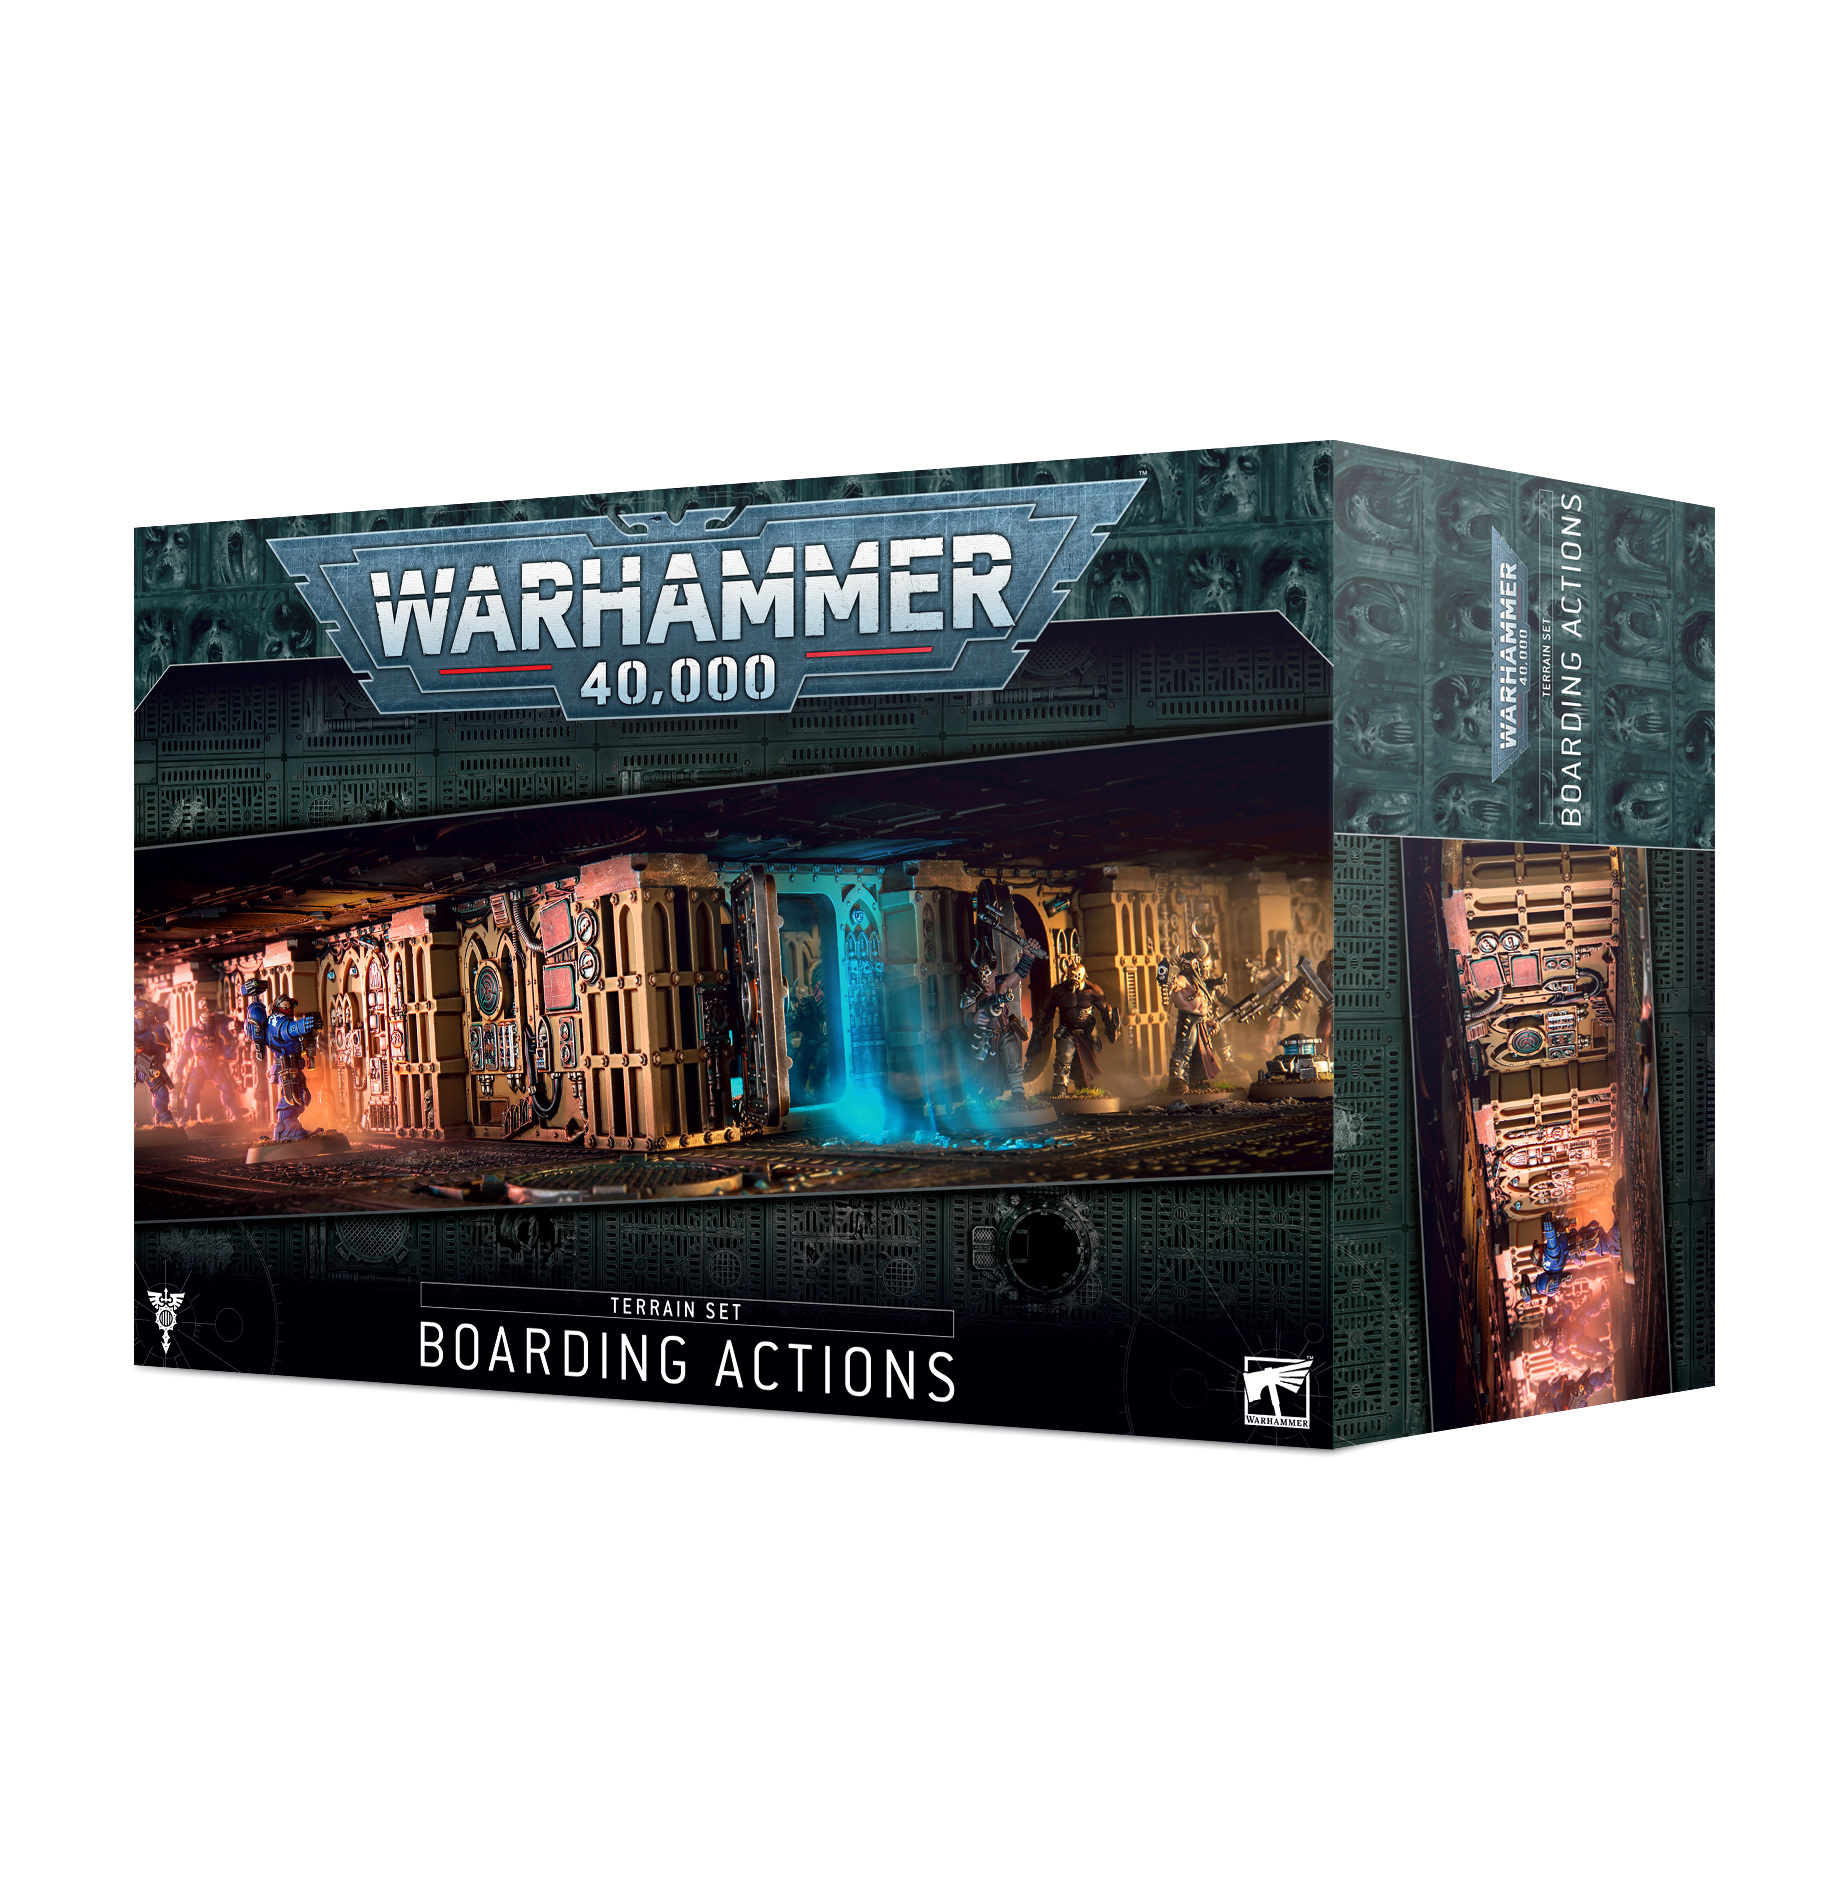  Fronteris Nachmund Battlezone Terrain Warhammer 40K Nib : Toys  & Games